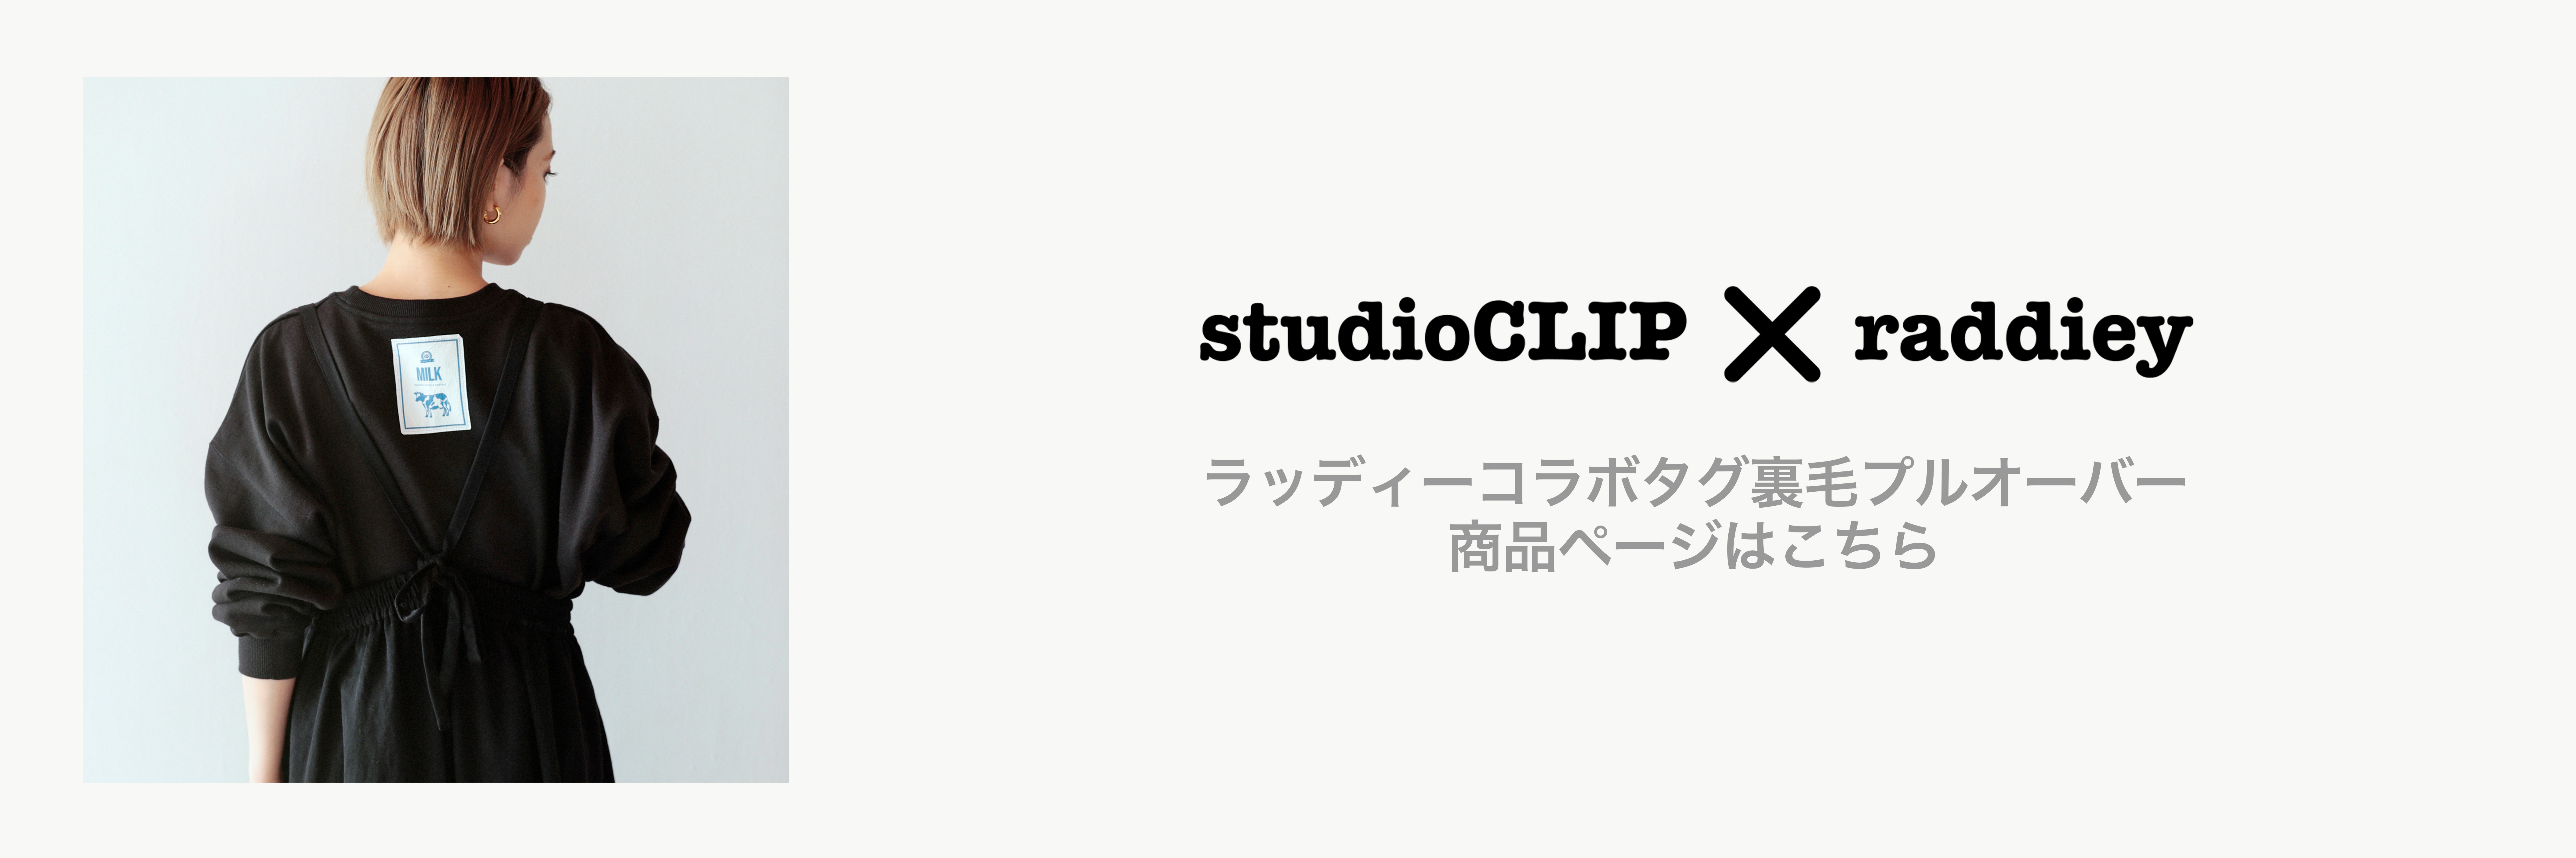 studioclip